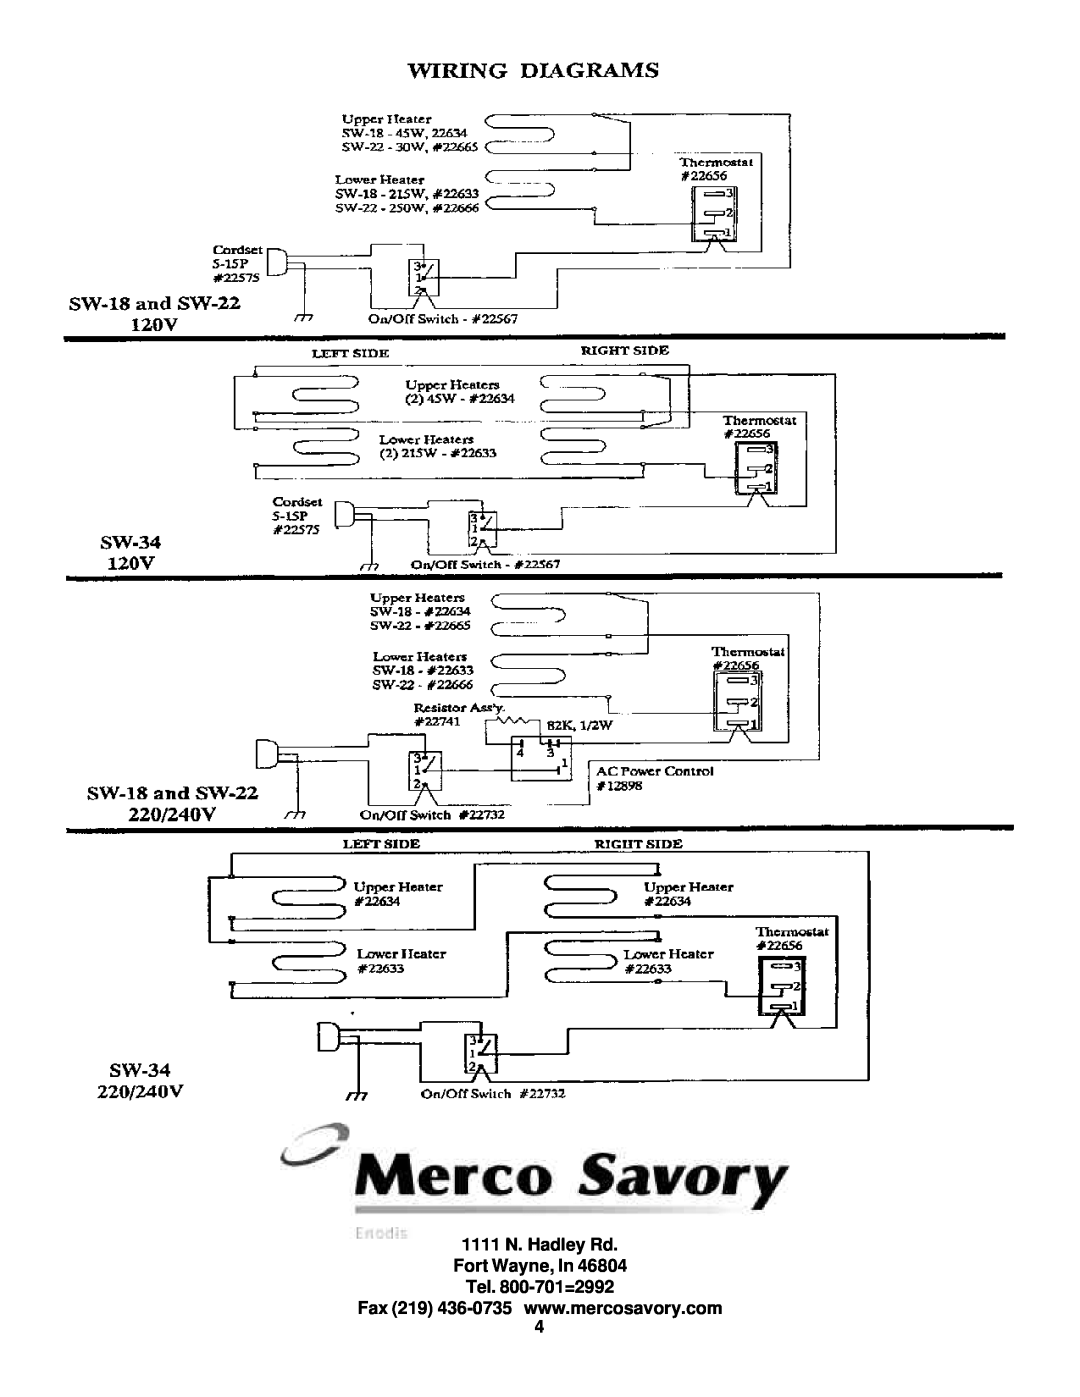 Merco Savory SW Series operation manual 1111 N. Hadley Rd Fort Wayne, In, Tel. 800-701=2992 